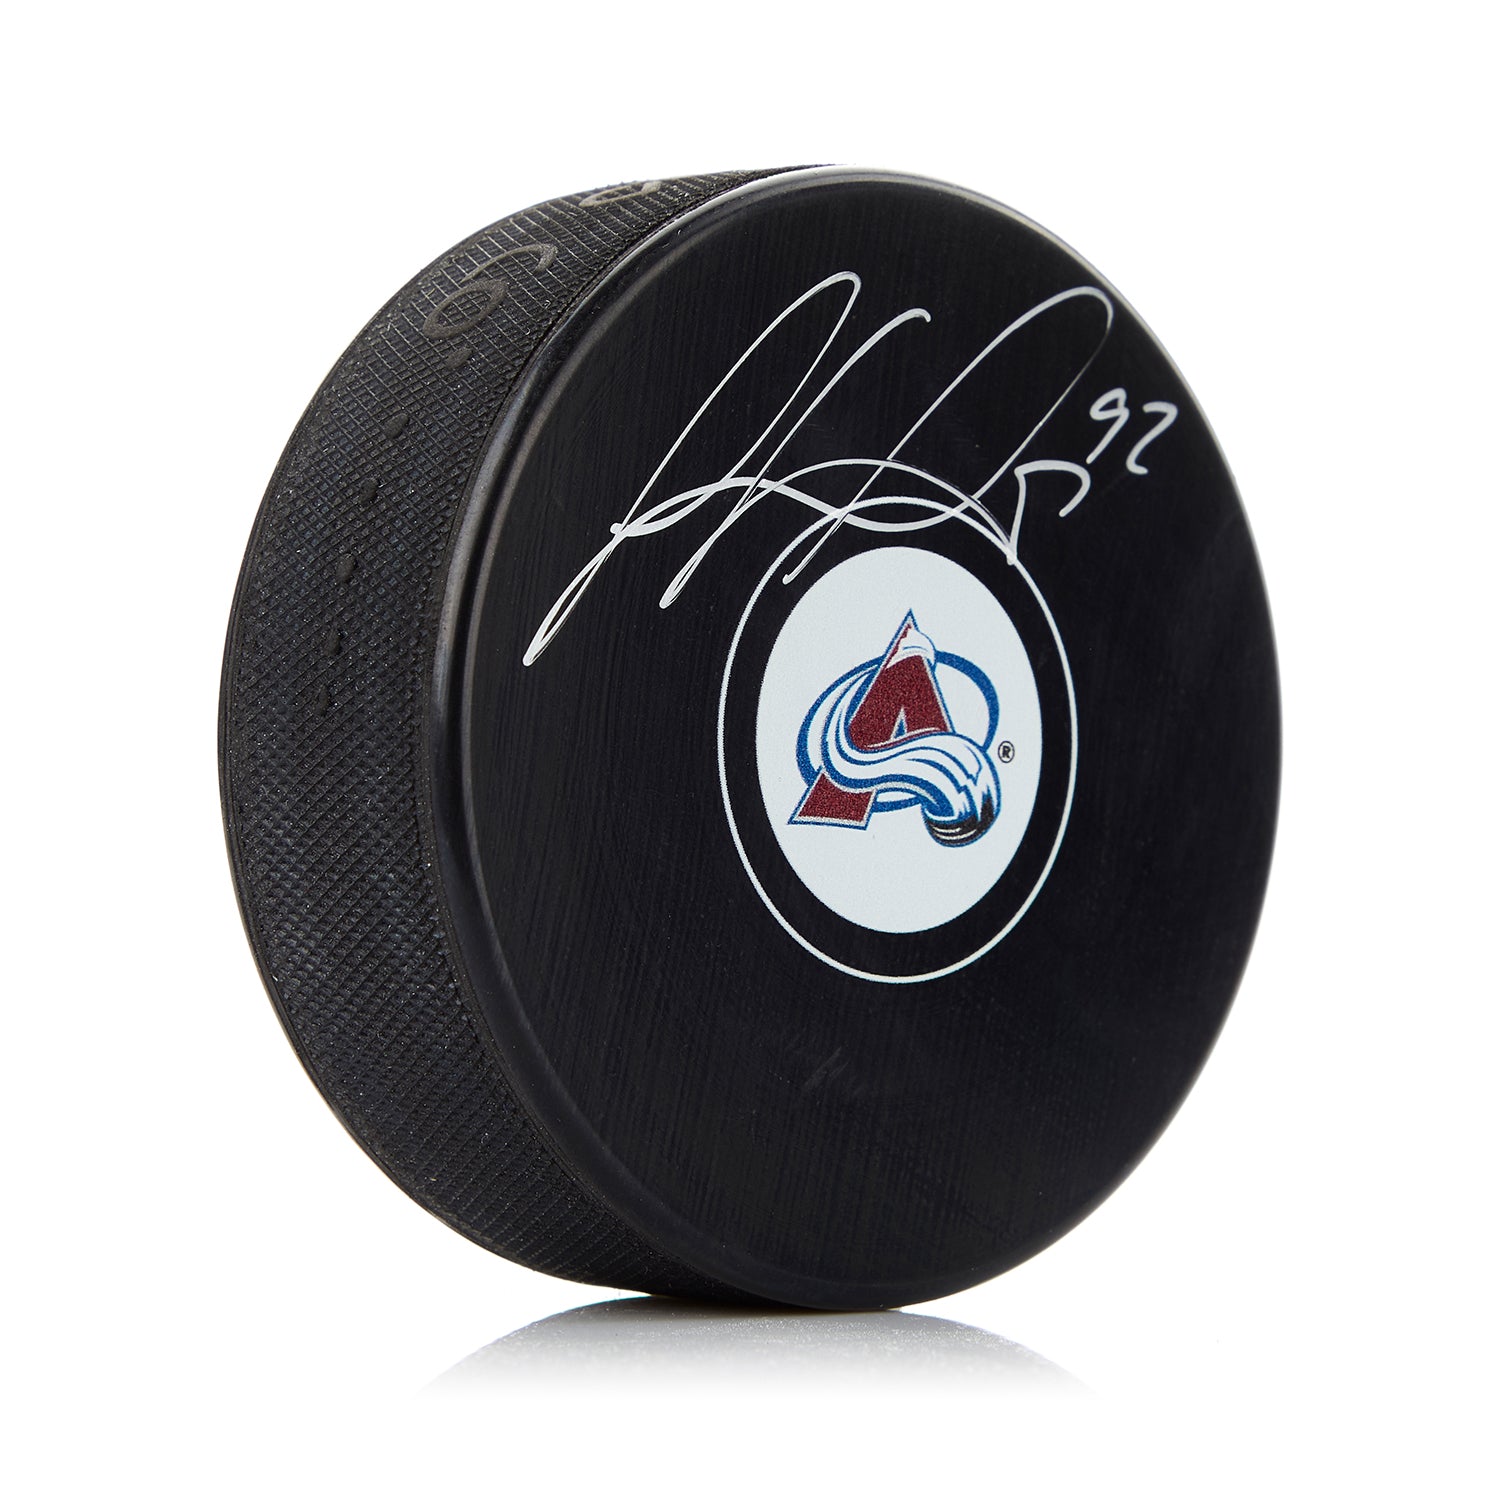 Gabriel Landeskog Colorado Avalanche Autographed Hockey Puck